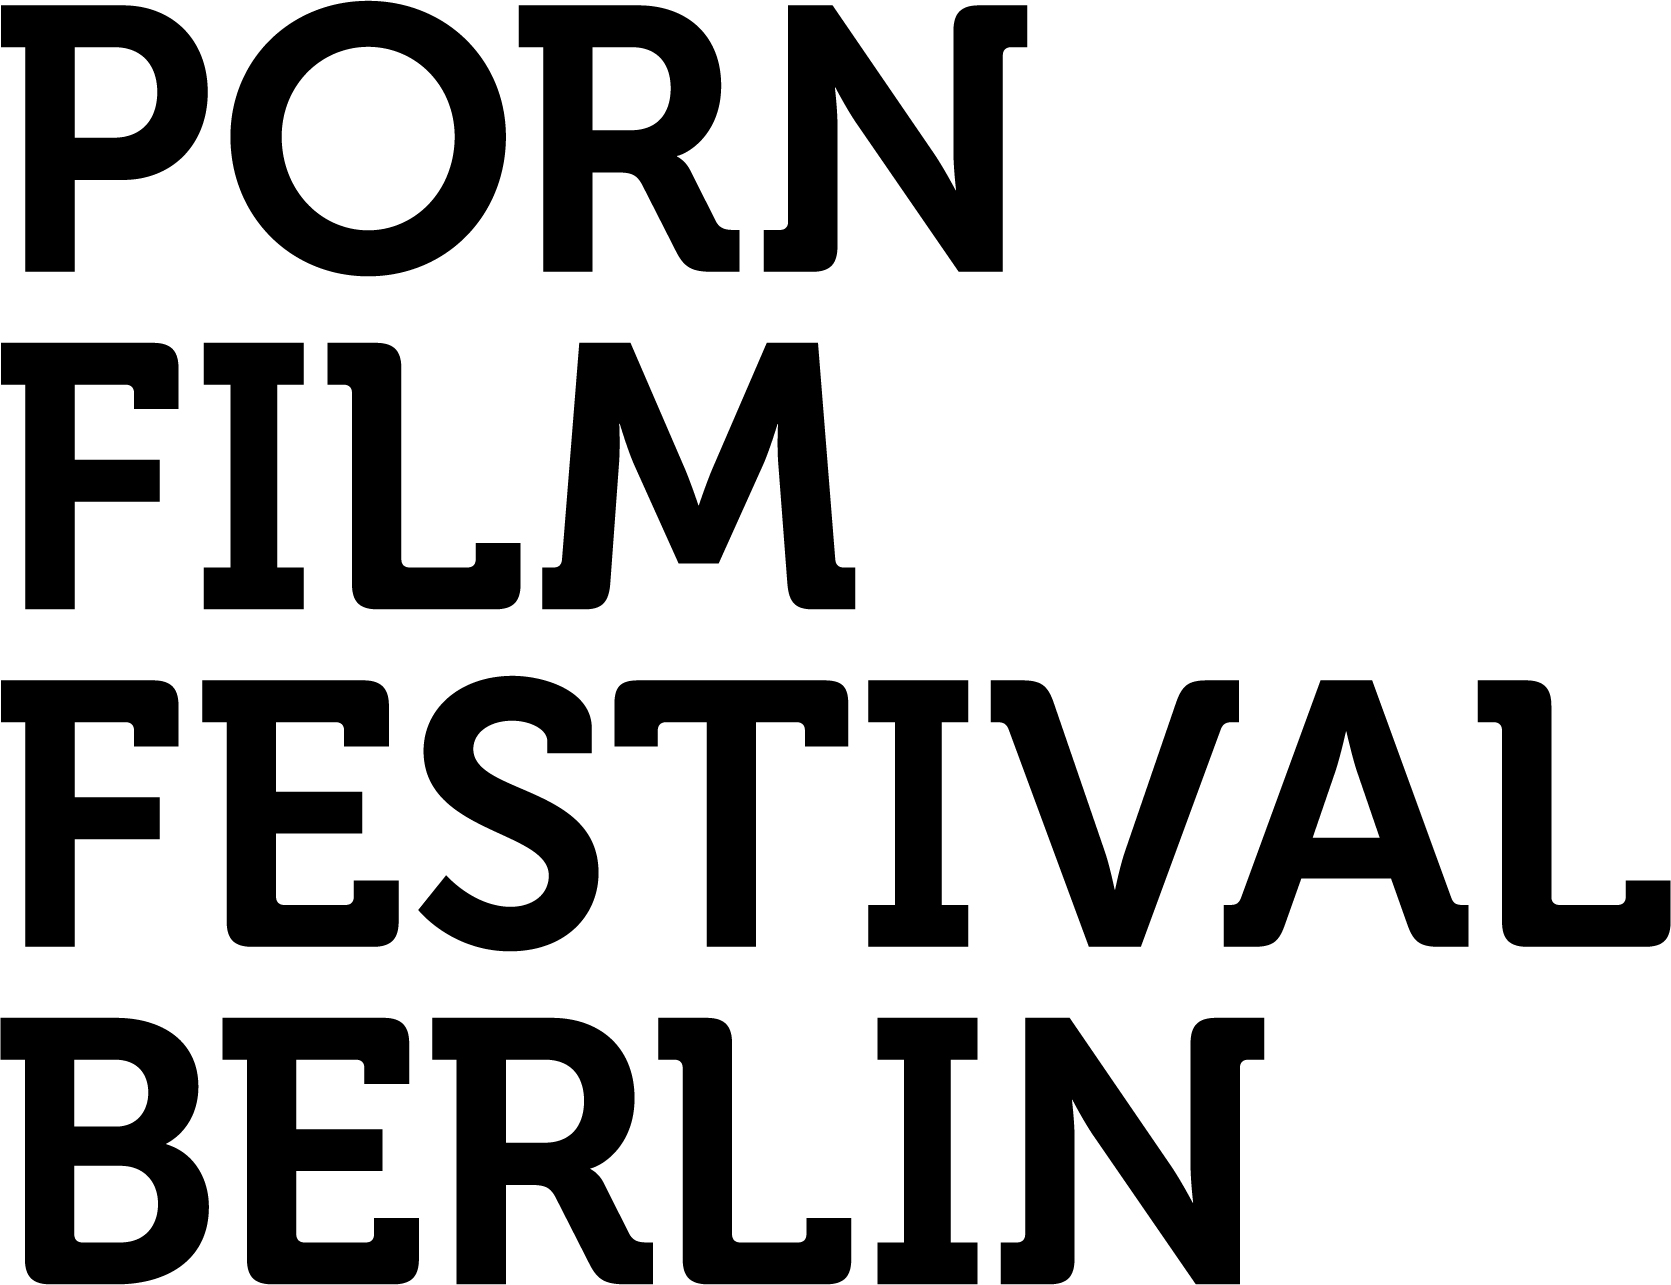 Berlin Feminist Film Week